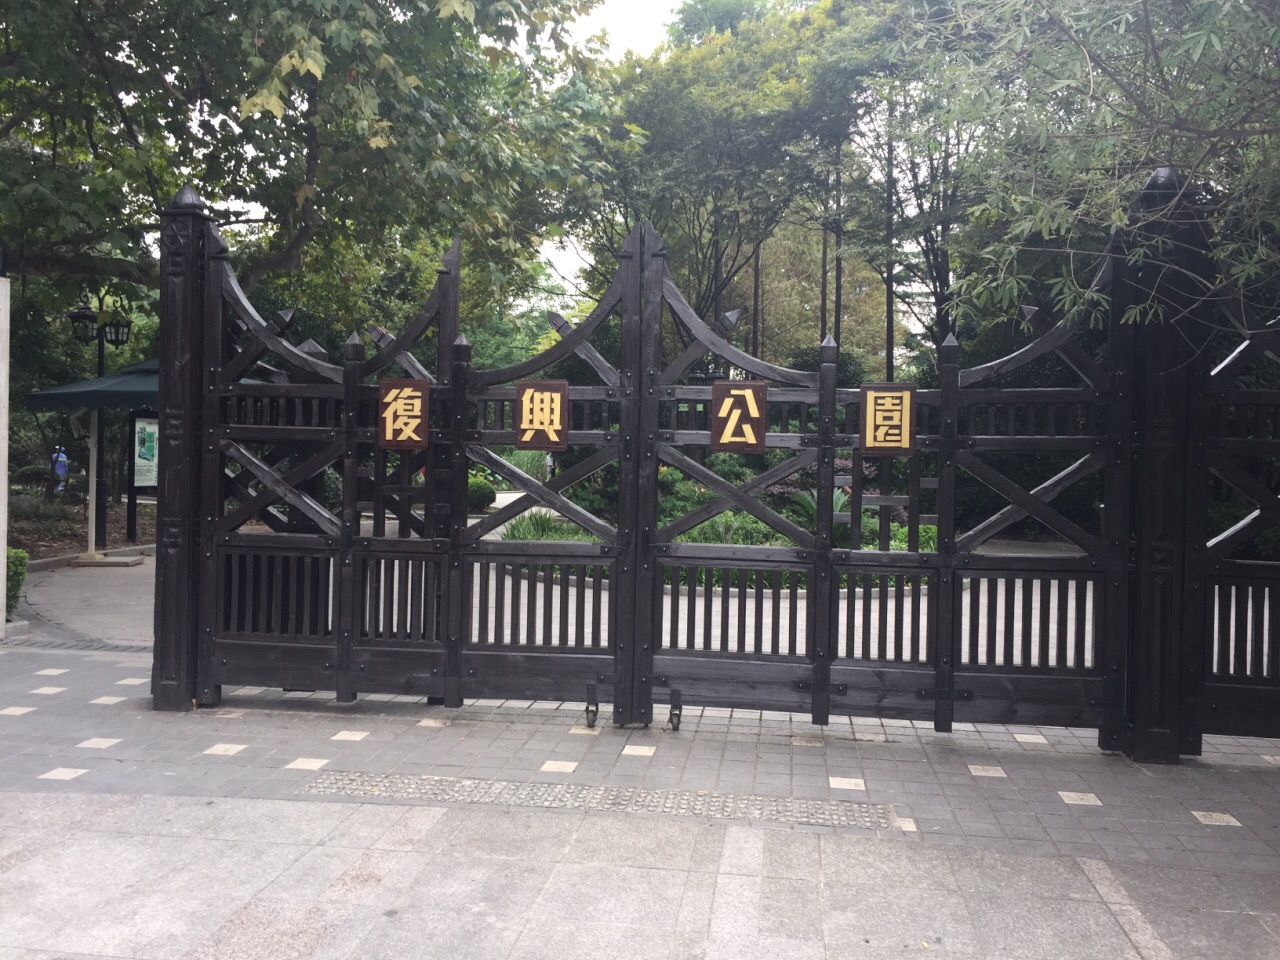 上海复兴公园好玩吗,上海复兴公园景点怎么样_点评